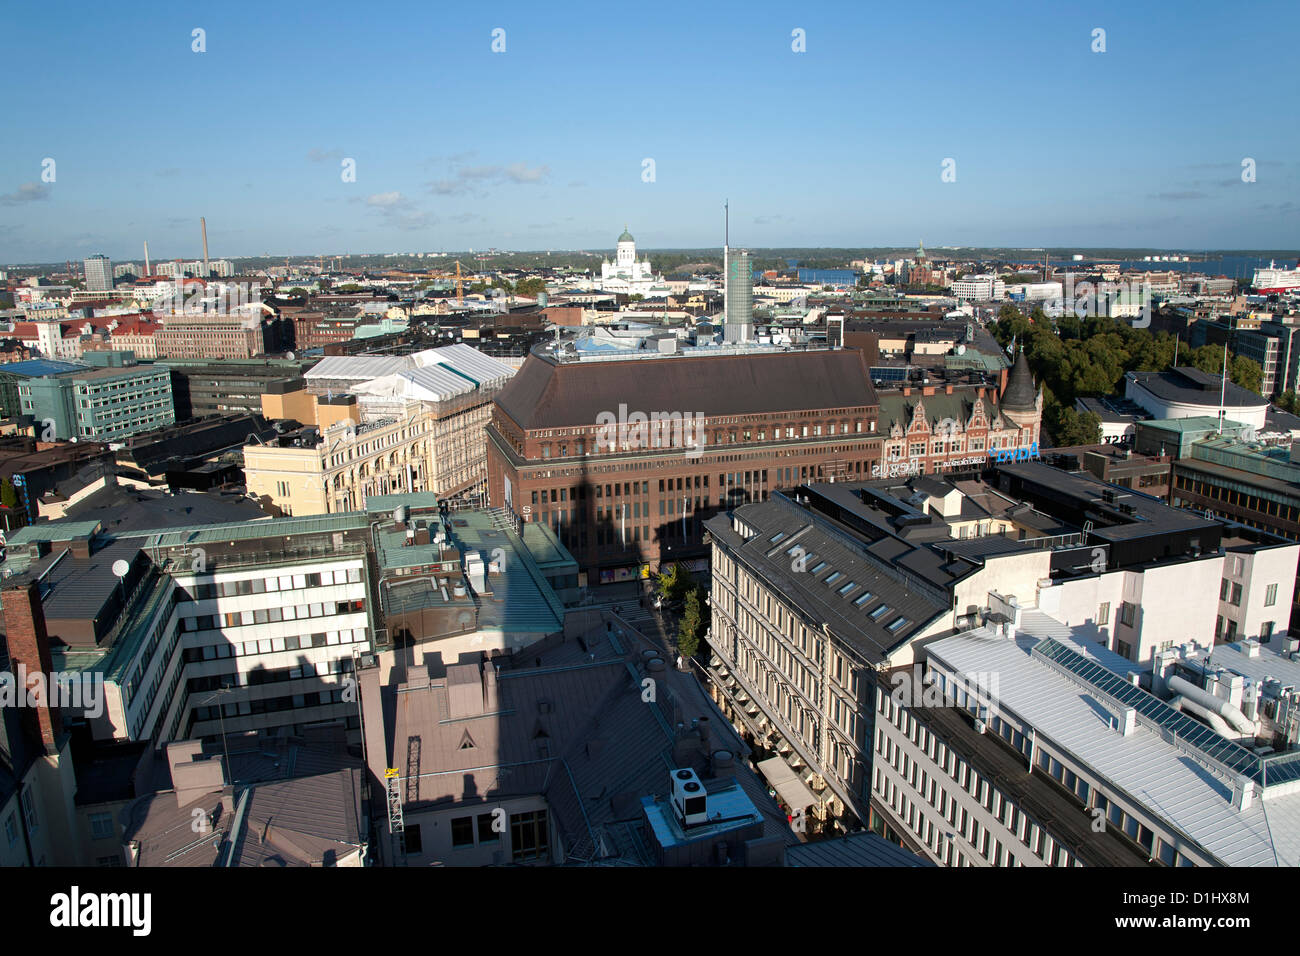 Vue vers l'est sur les toits d'Helsinki, la capitale de la Finlande. Prise depuis le sommet de l'hôtel Torni. Banque D'Images